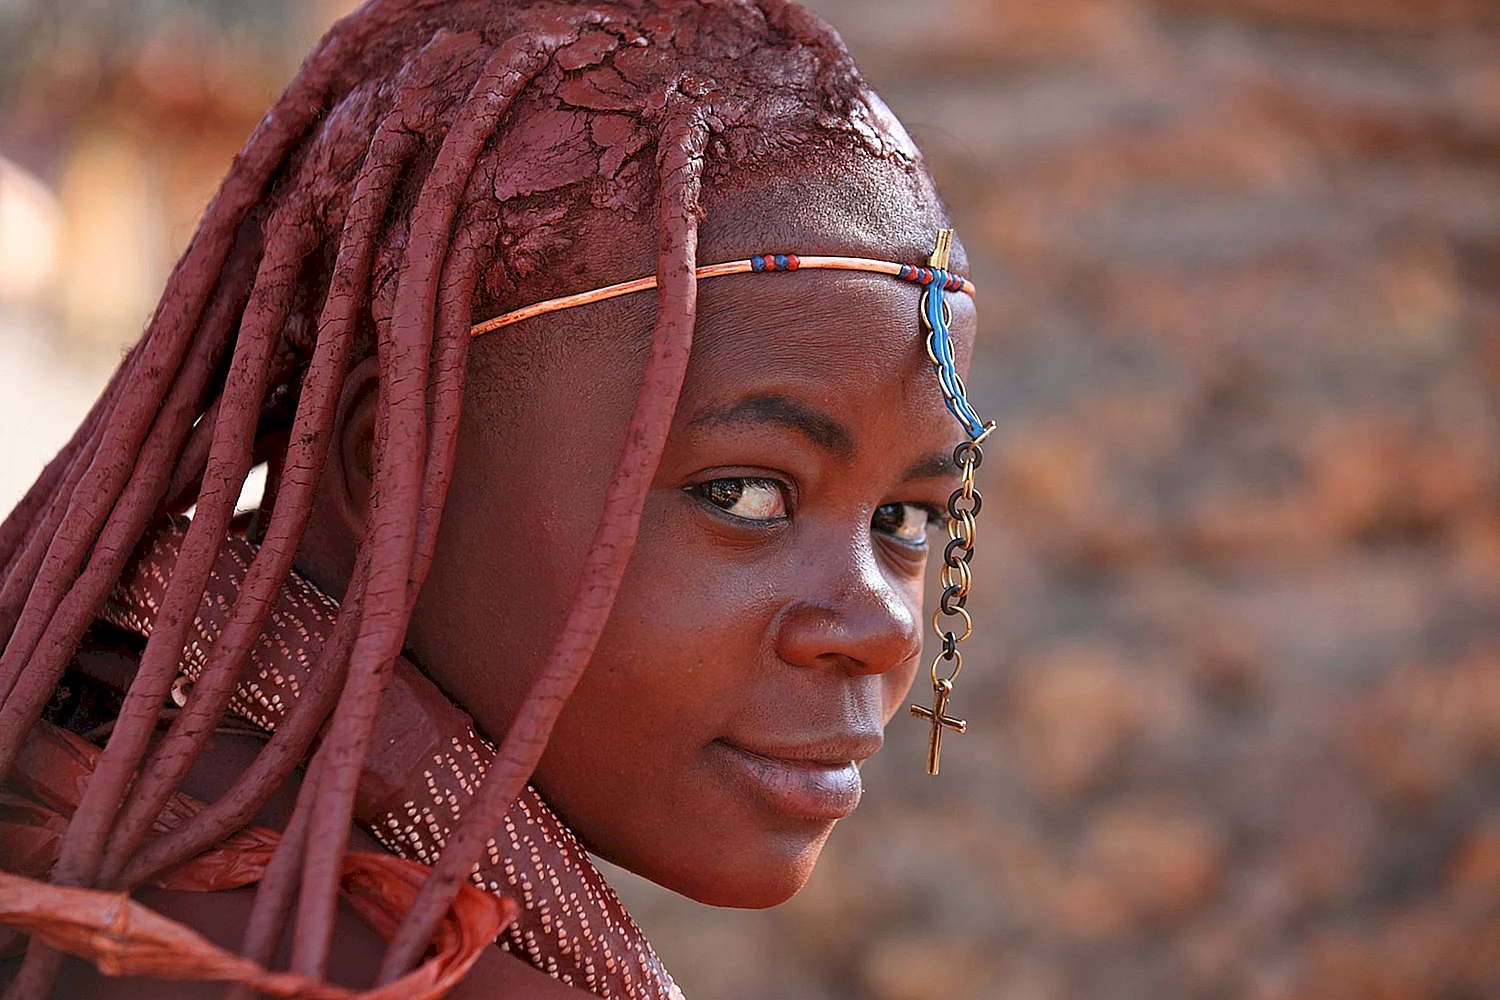 Племя Химба в Намибии